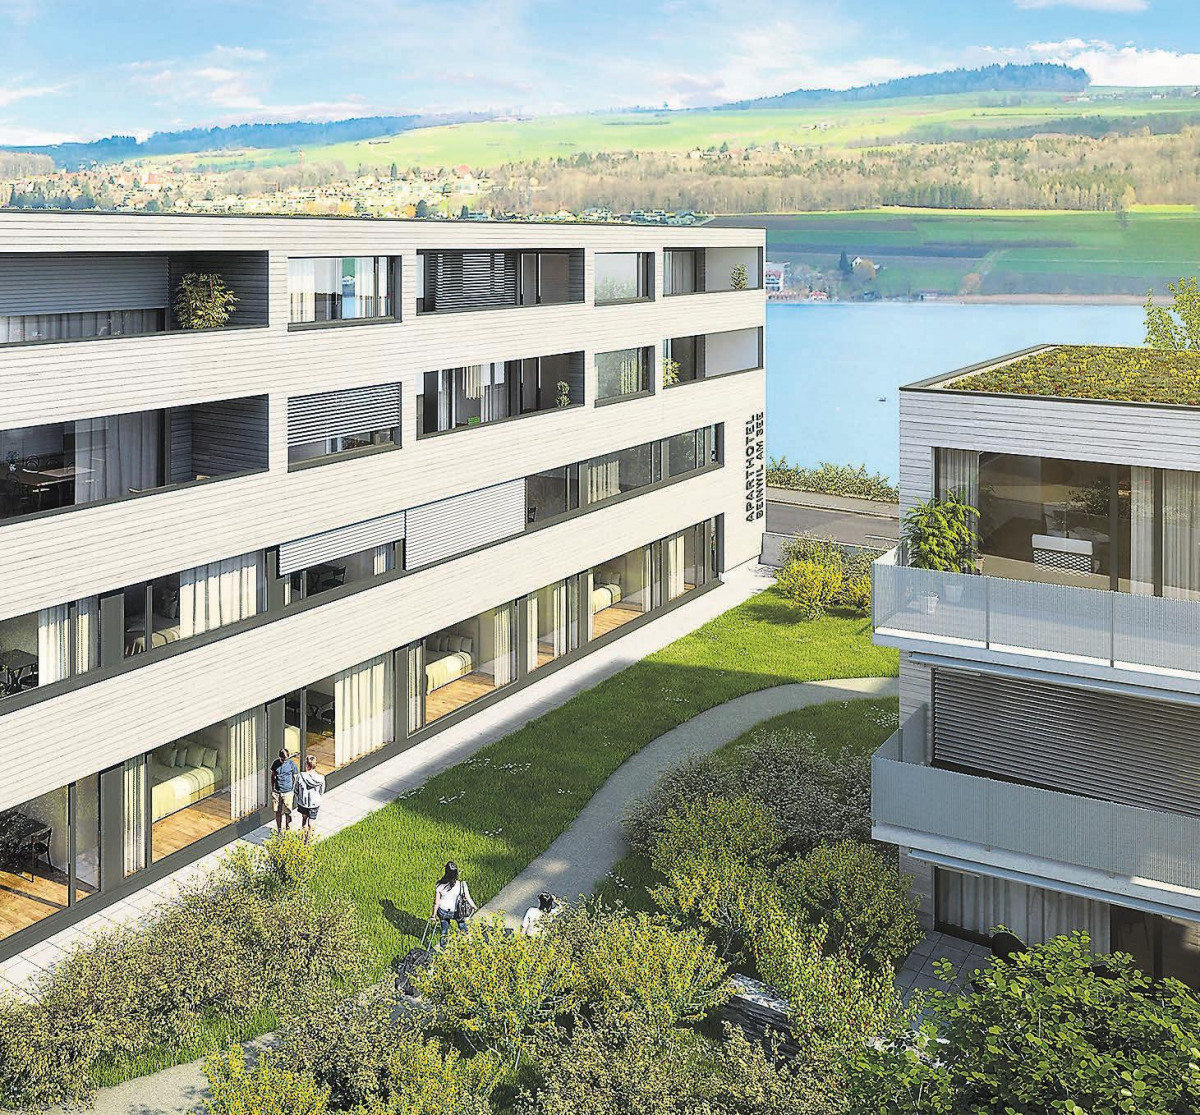 Gesamtüberbauung Widenmatt in Beinwil am See: Architektur besteht aus Eigentumswohnungen und Aparthotel 